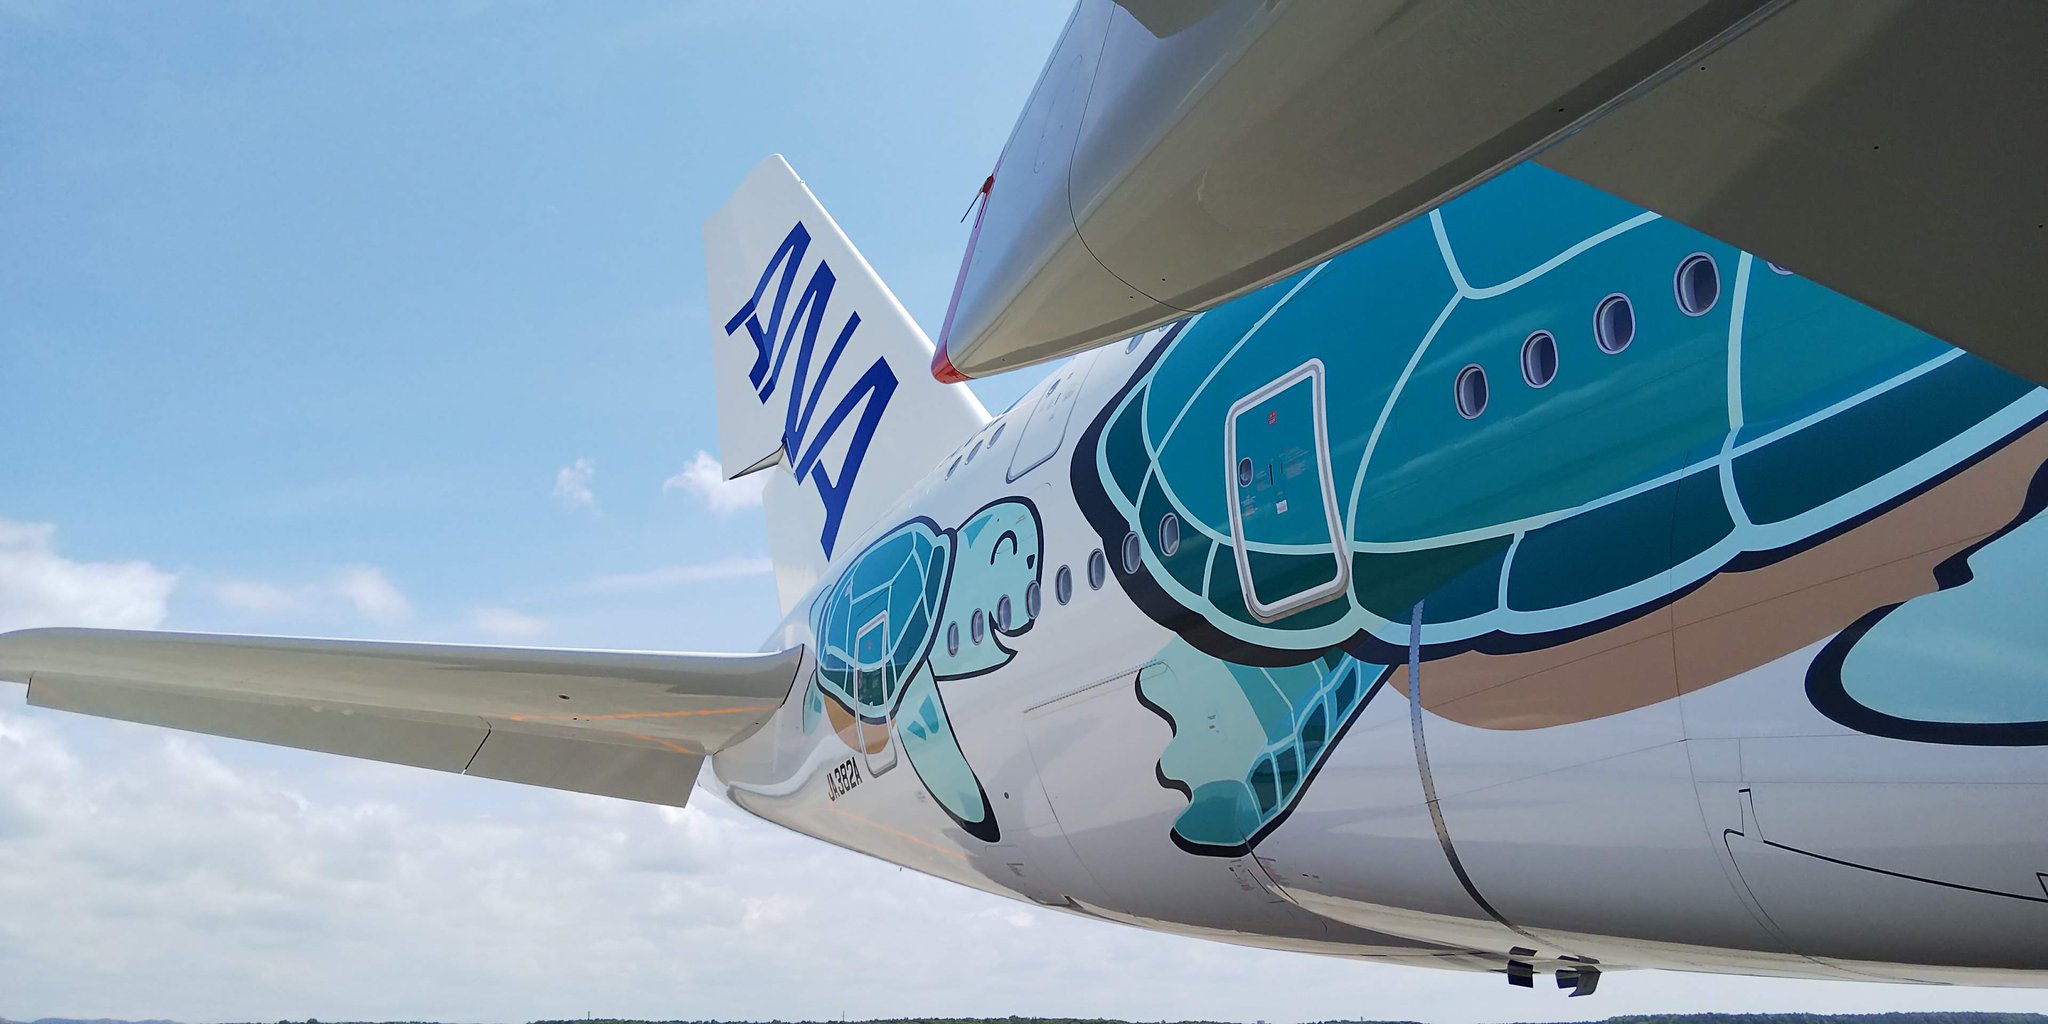 Ana旅のつぶやき 公式 青空に恋 した人々 エアバスa380 は世界で1番大きな旅客機で 最大離陸重量は560トンを誇ります コックピットには6枚の窓があり その一部は開閉も出来ます 地面からパイロットの目線までは約7mあり 前方が広く見渡せます